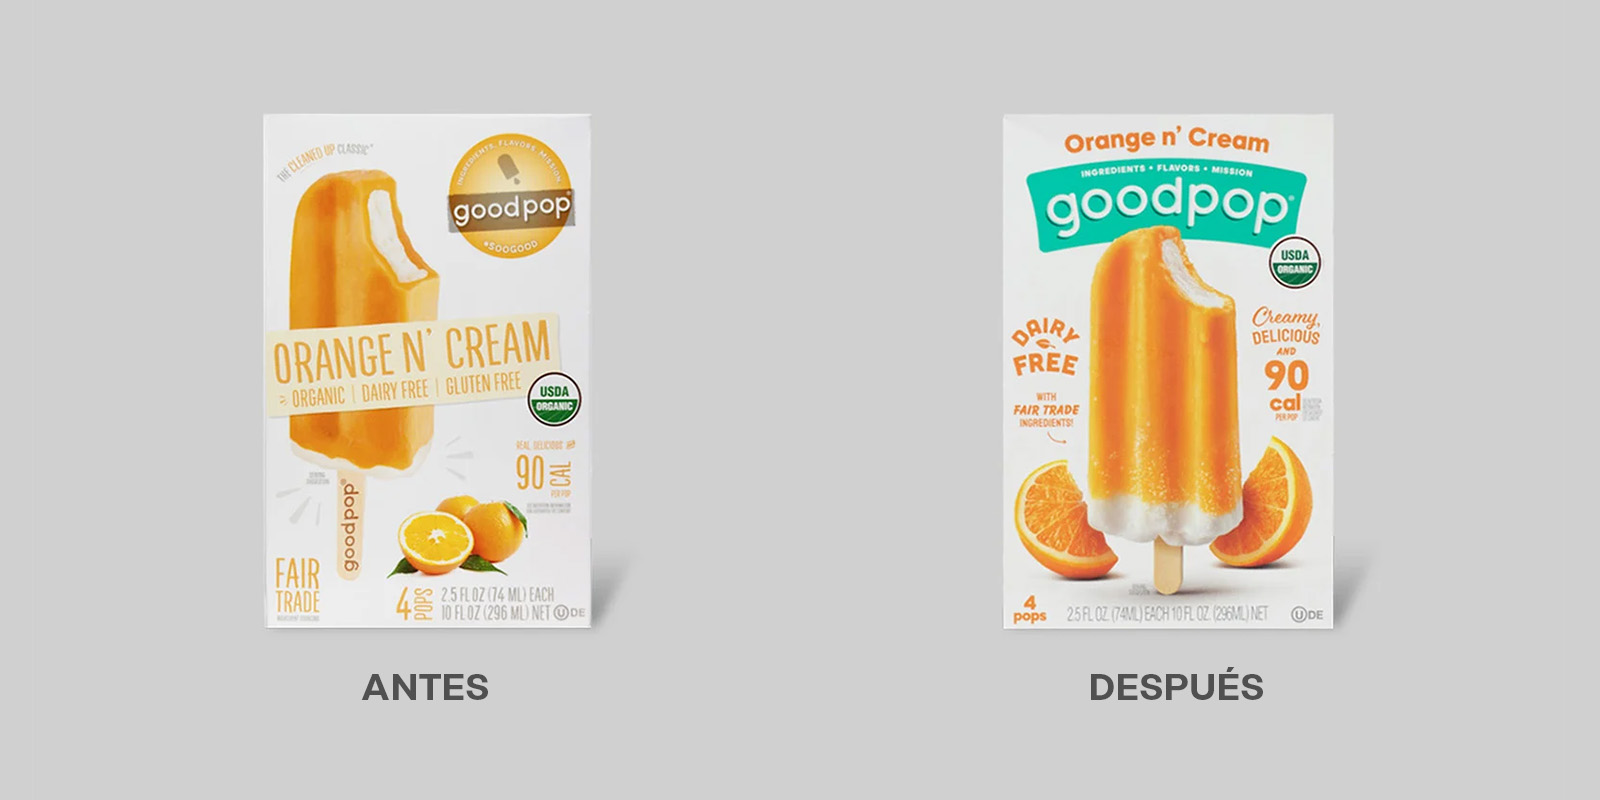 Antes y después del rediseño de logo y packaging de los helados Good Pop. El nuevo envase muestra una imagen más apetitosa de una paleta helada de naranja y crema, mejor jerarquía de la información y el logo con mayor presencia.